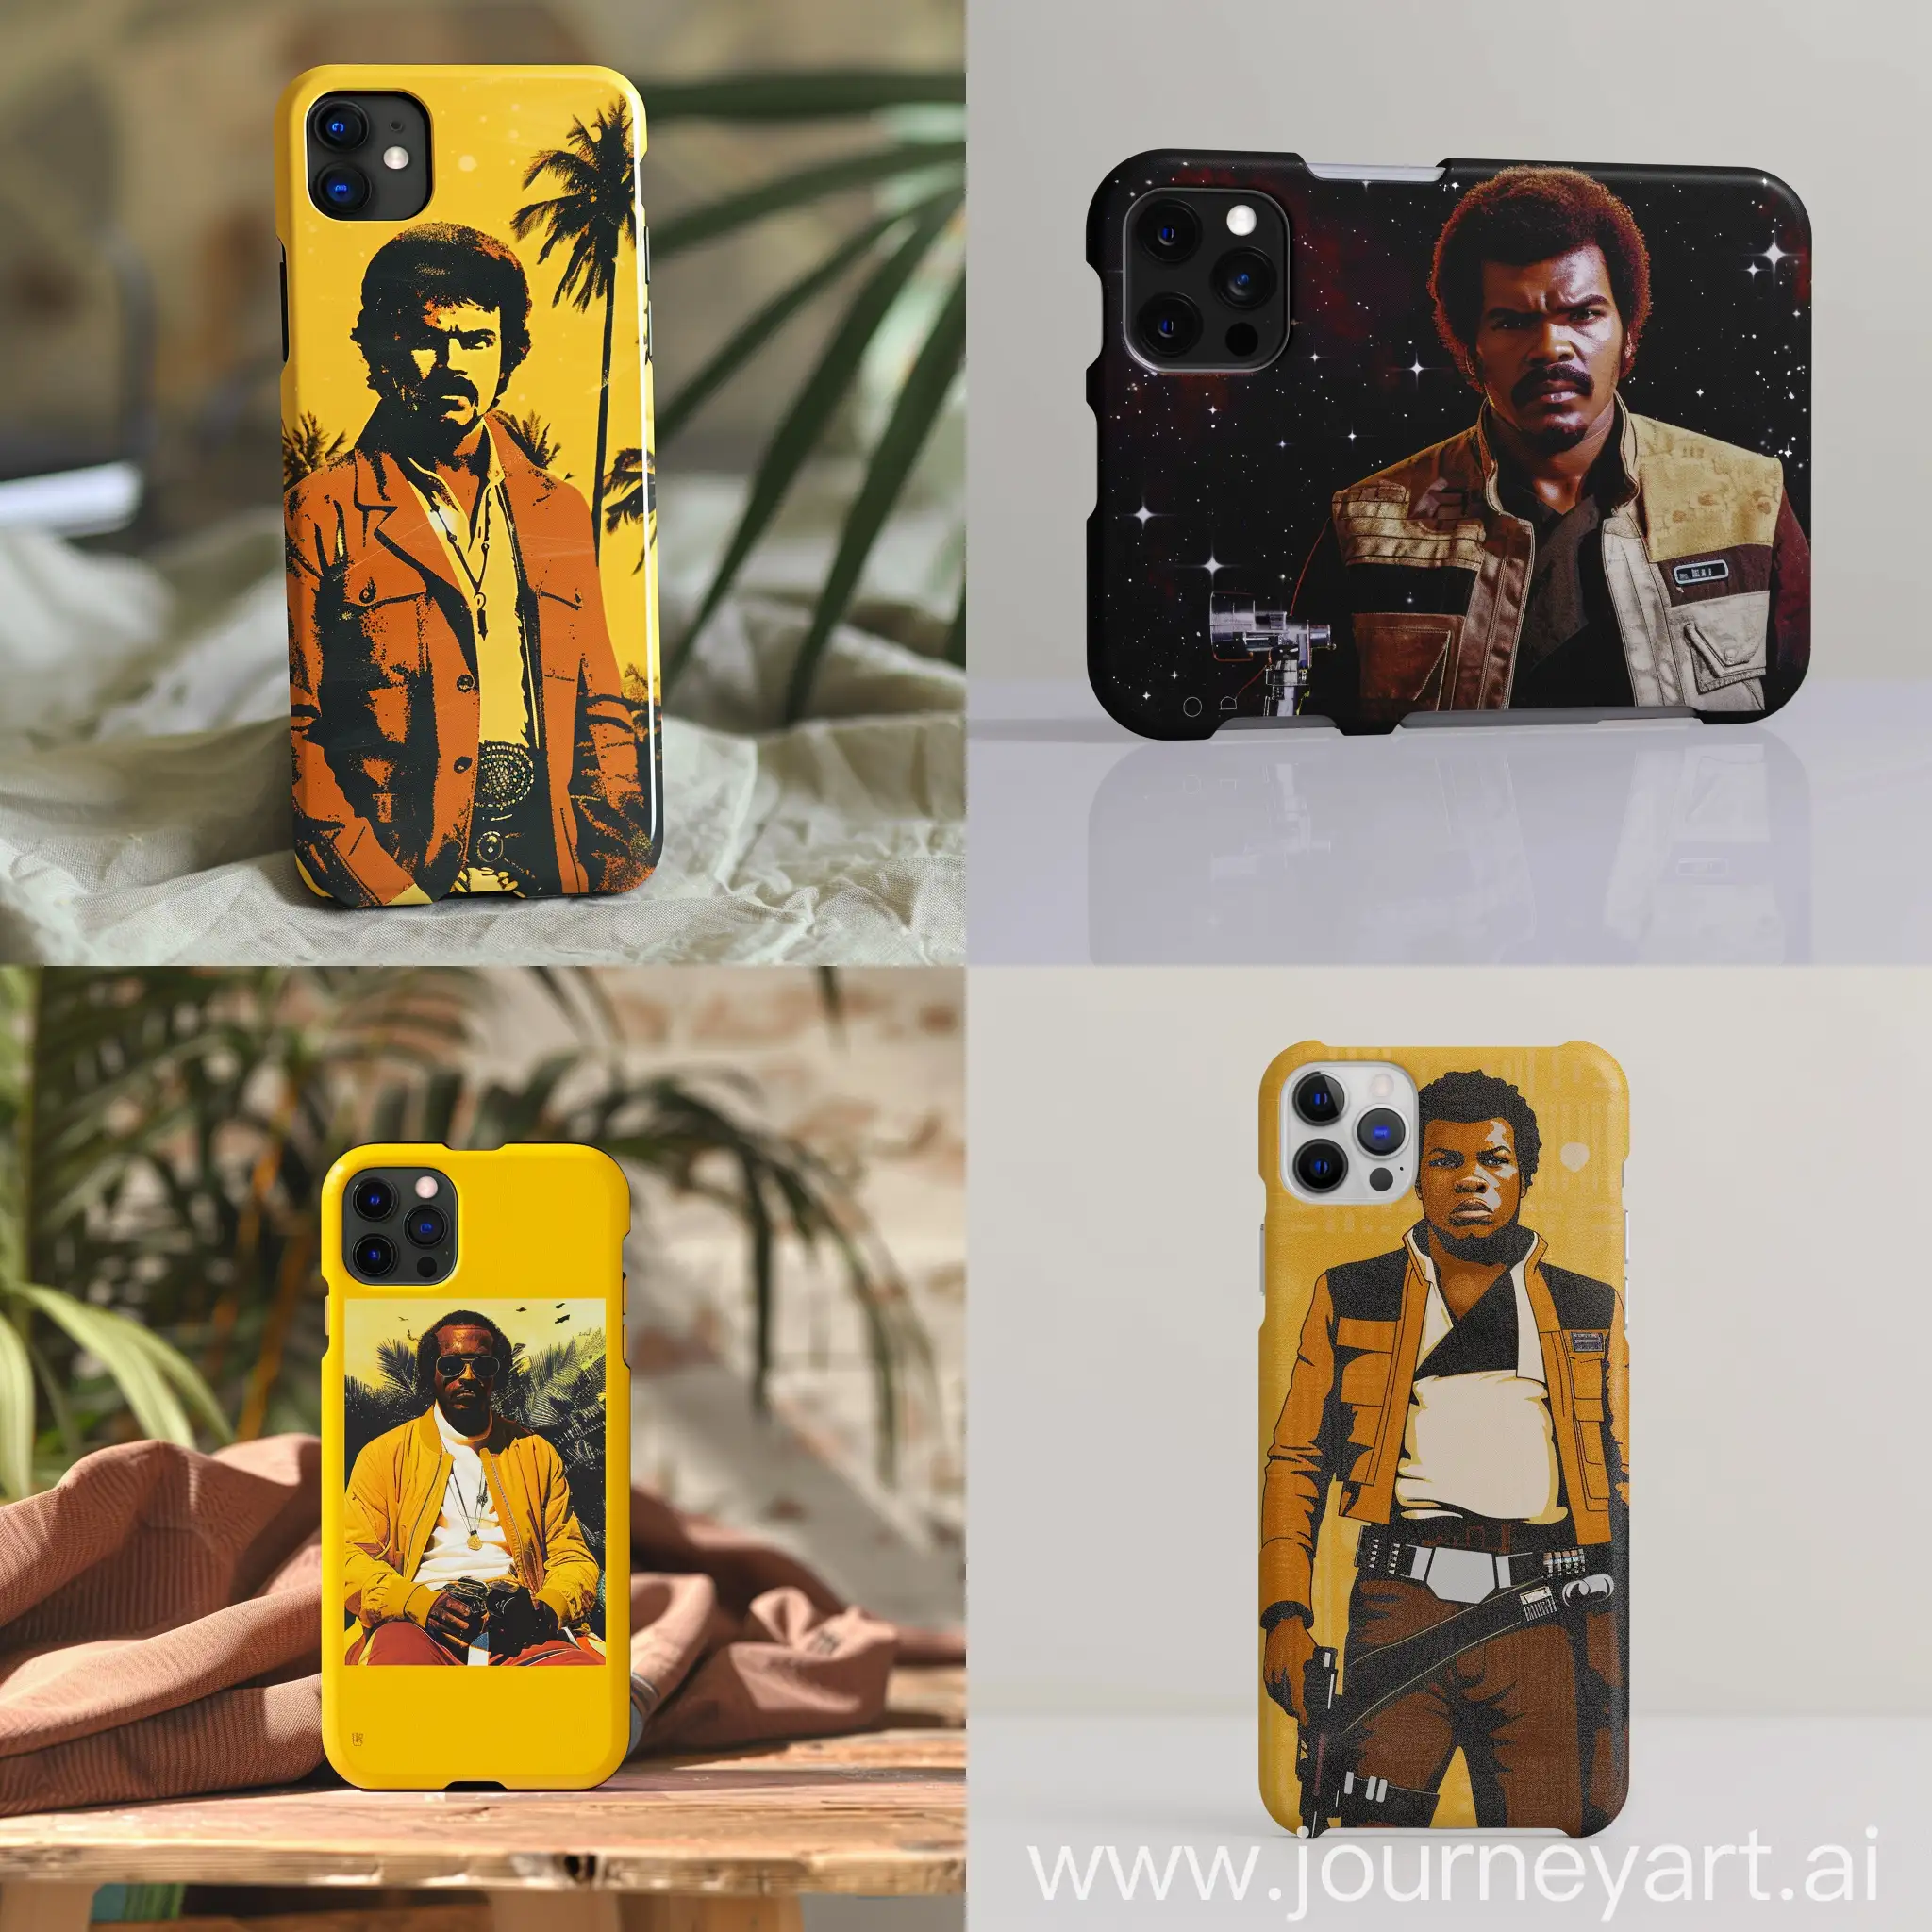 Lando norris design for phone case